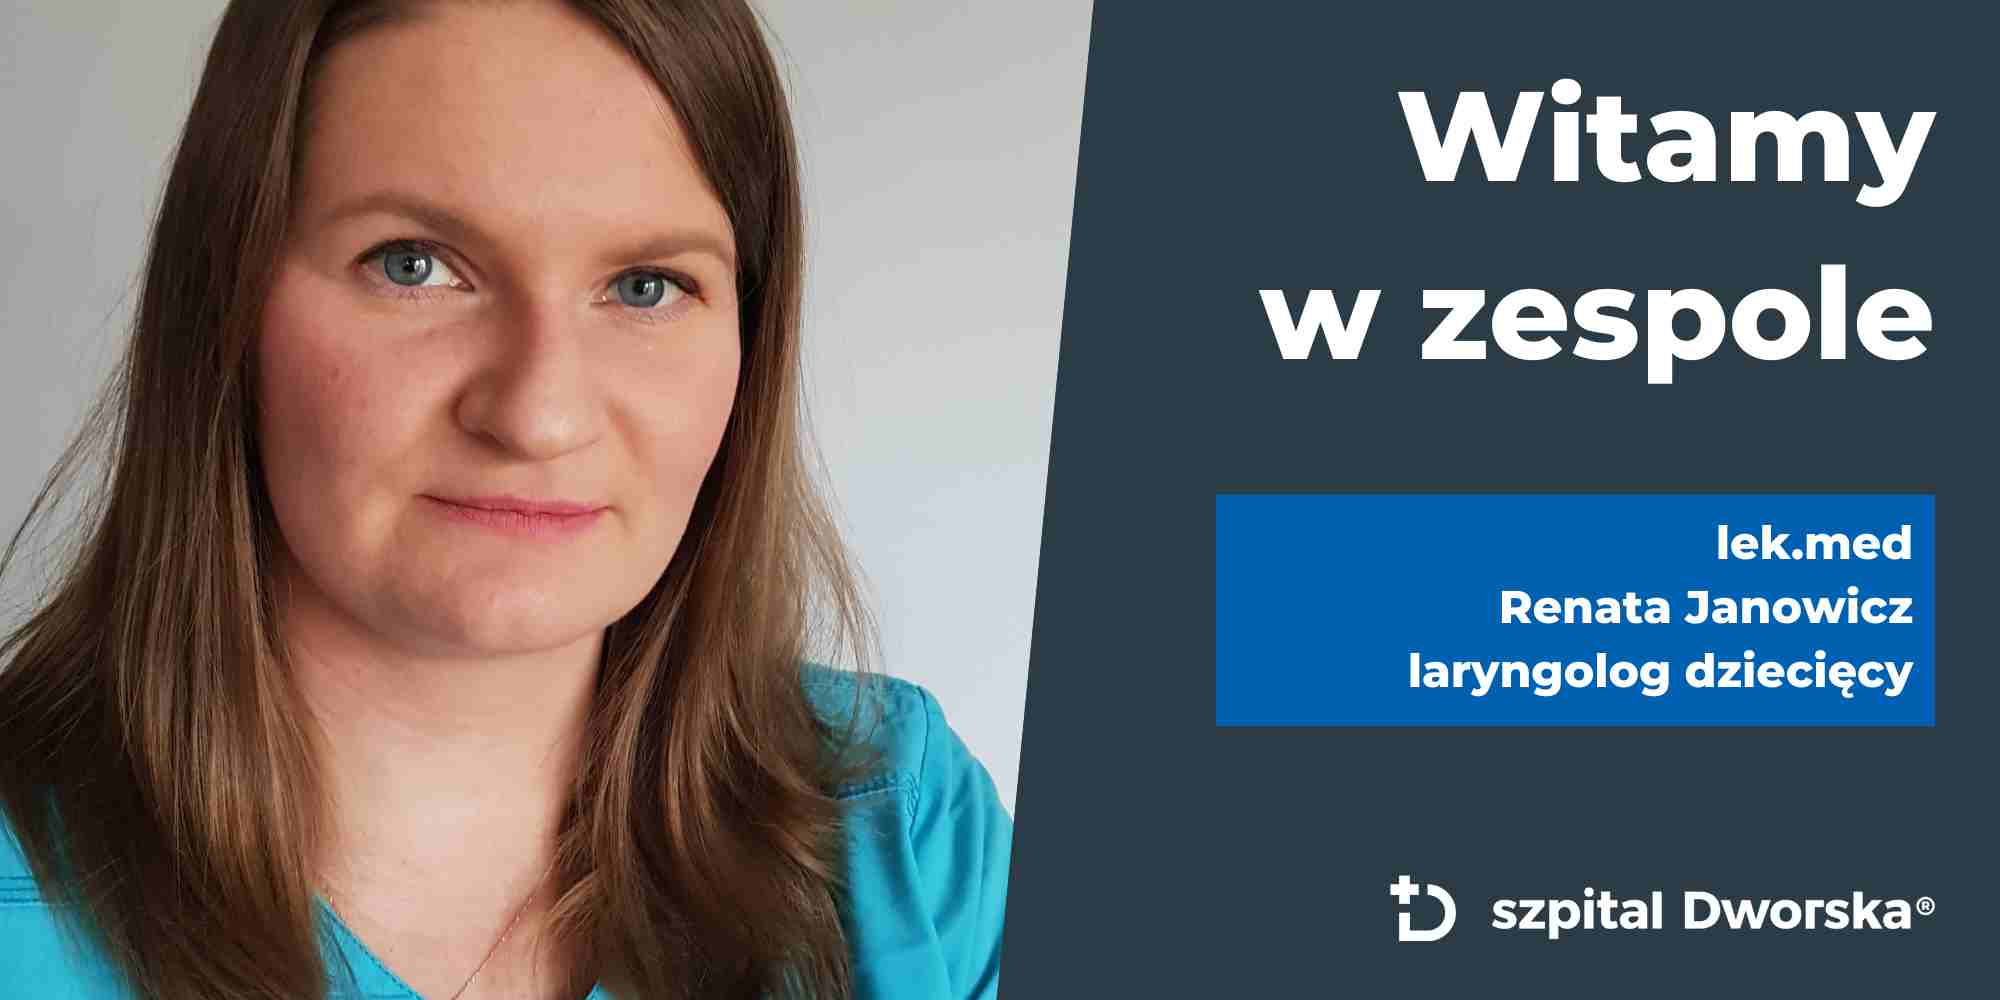 WITAMY W ZESPOLE! Lek.med. Renata Janowicz - laryngolog dziecięcy